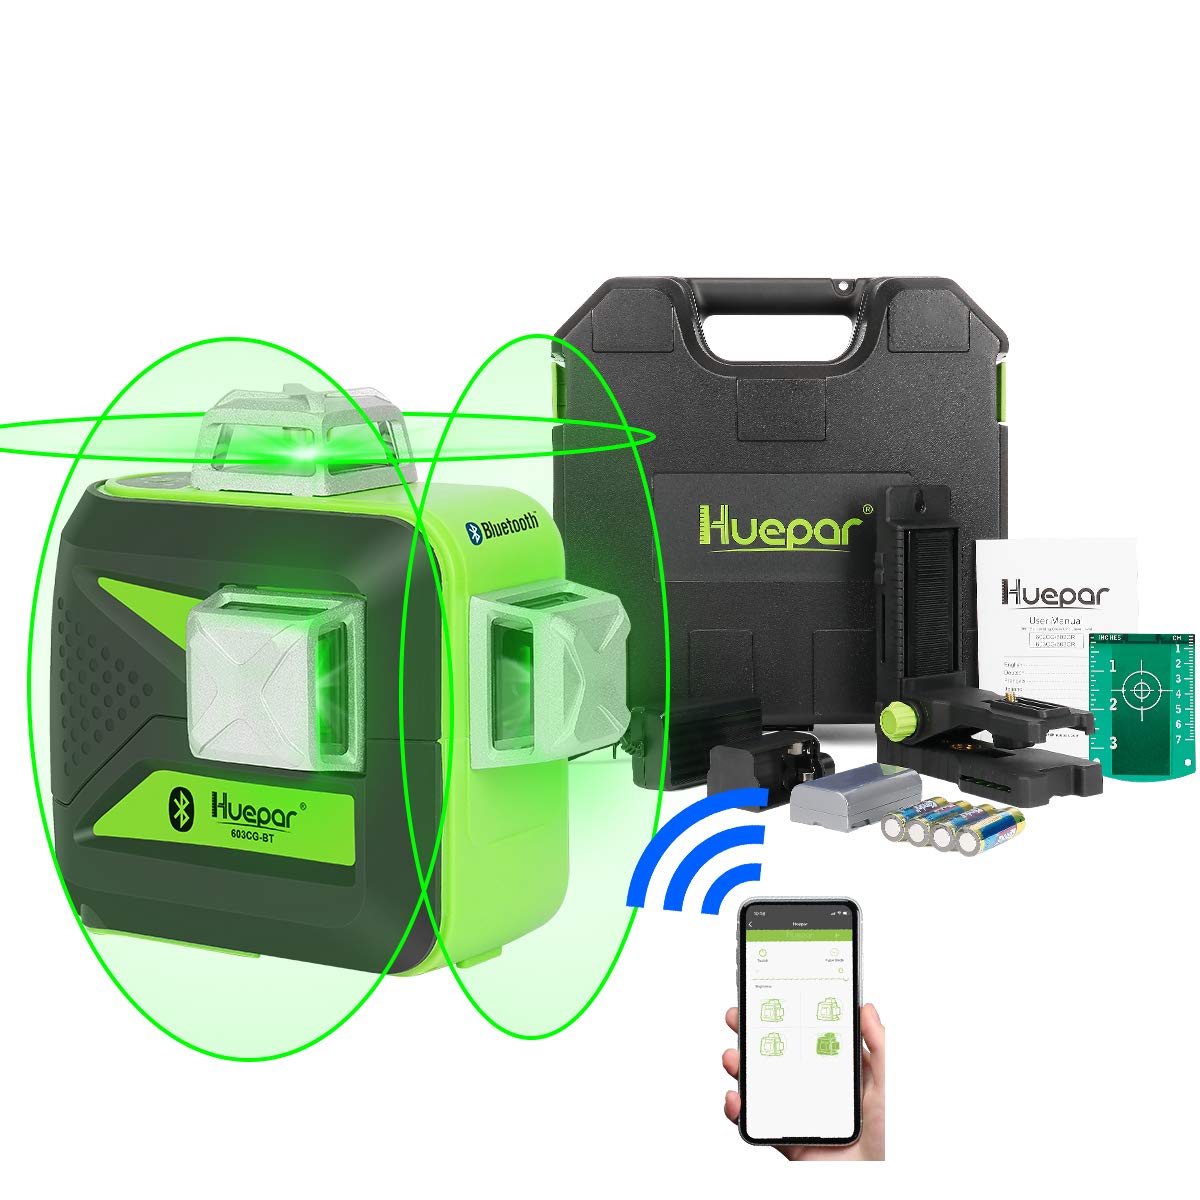 Huepar 603CG-BT - Nivel láser 3D con haz verde de 3 x 360° y conectividad Bluetooth